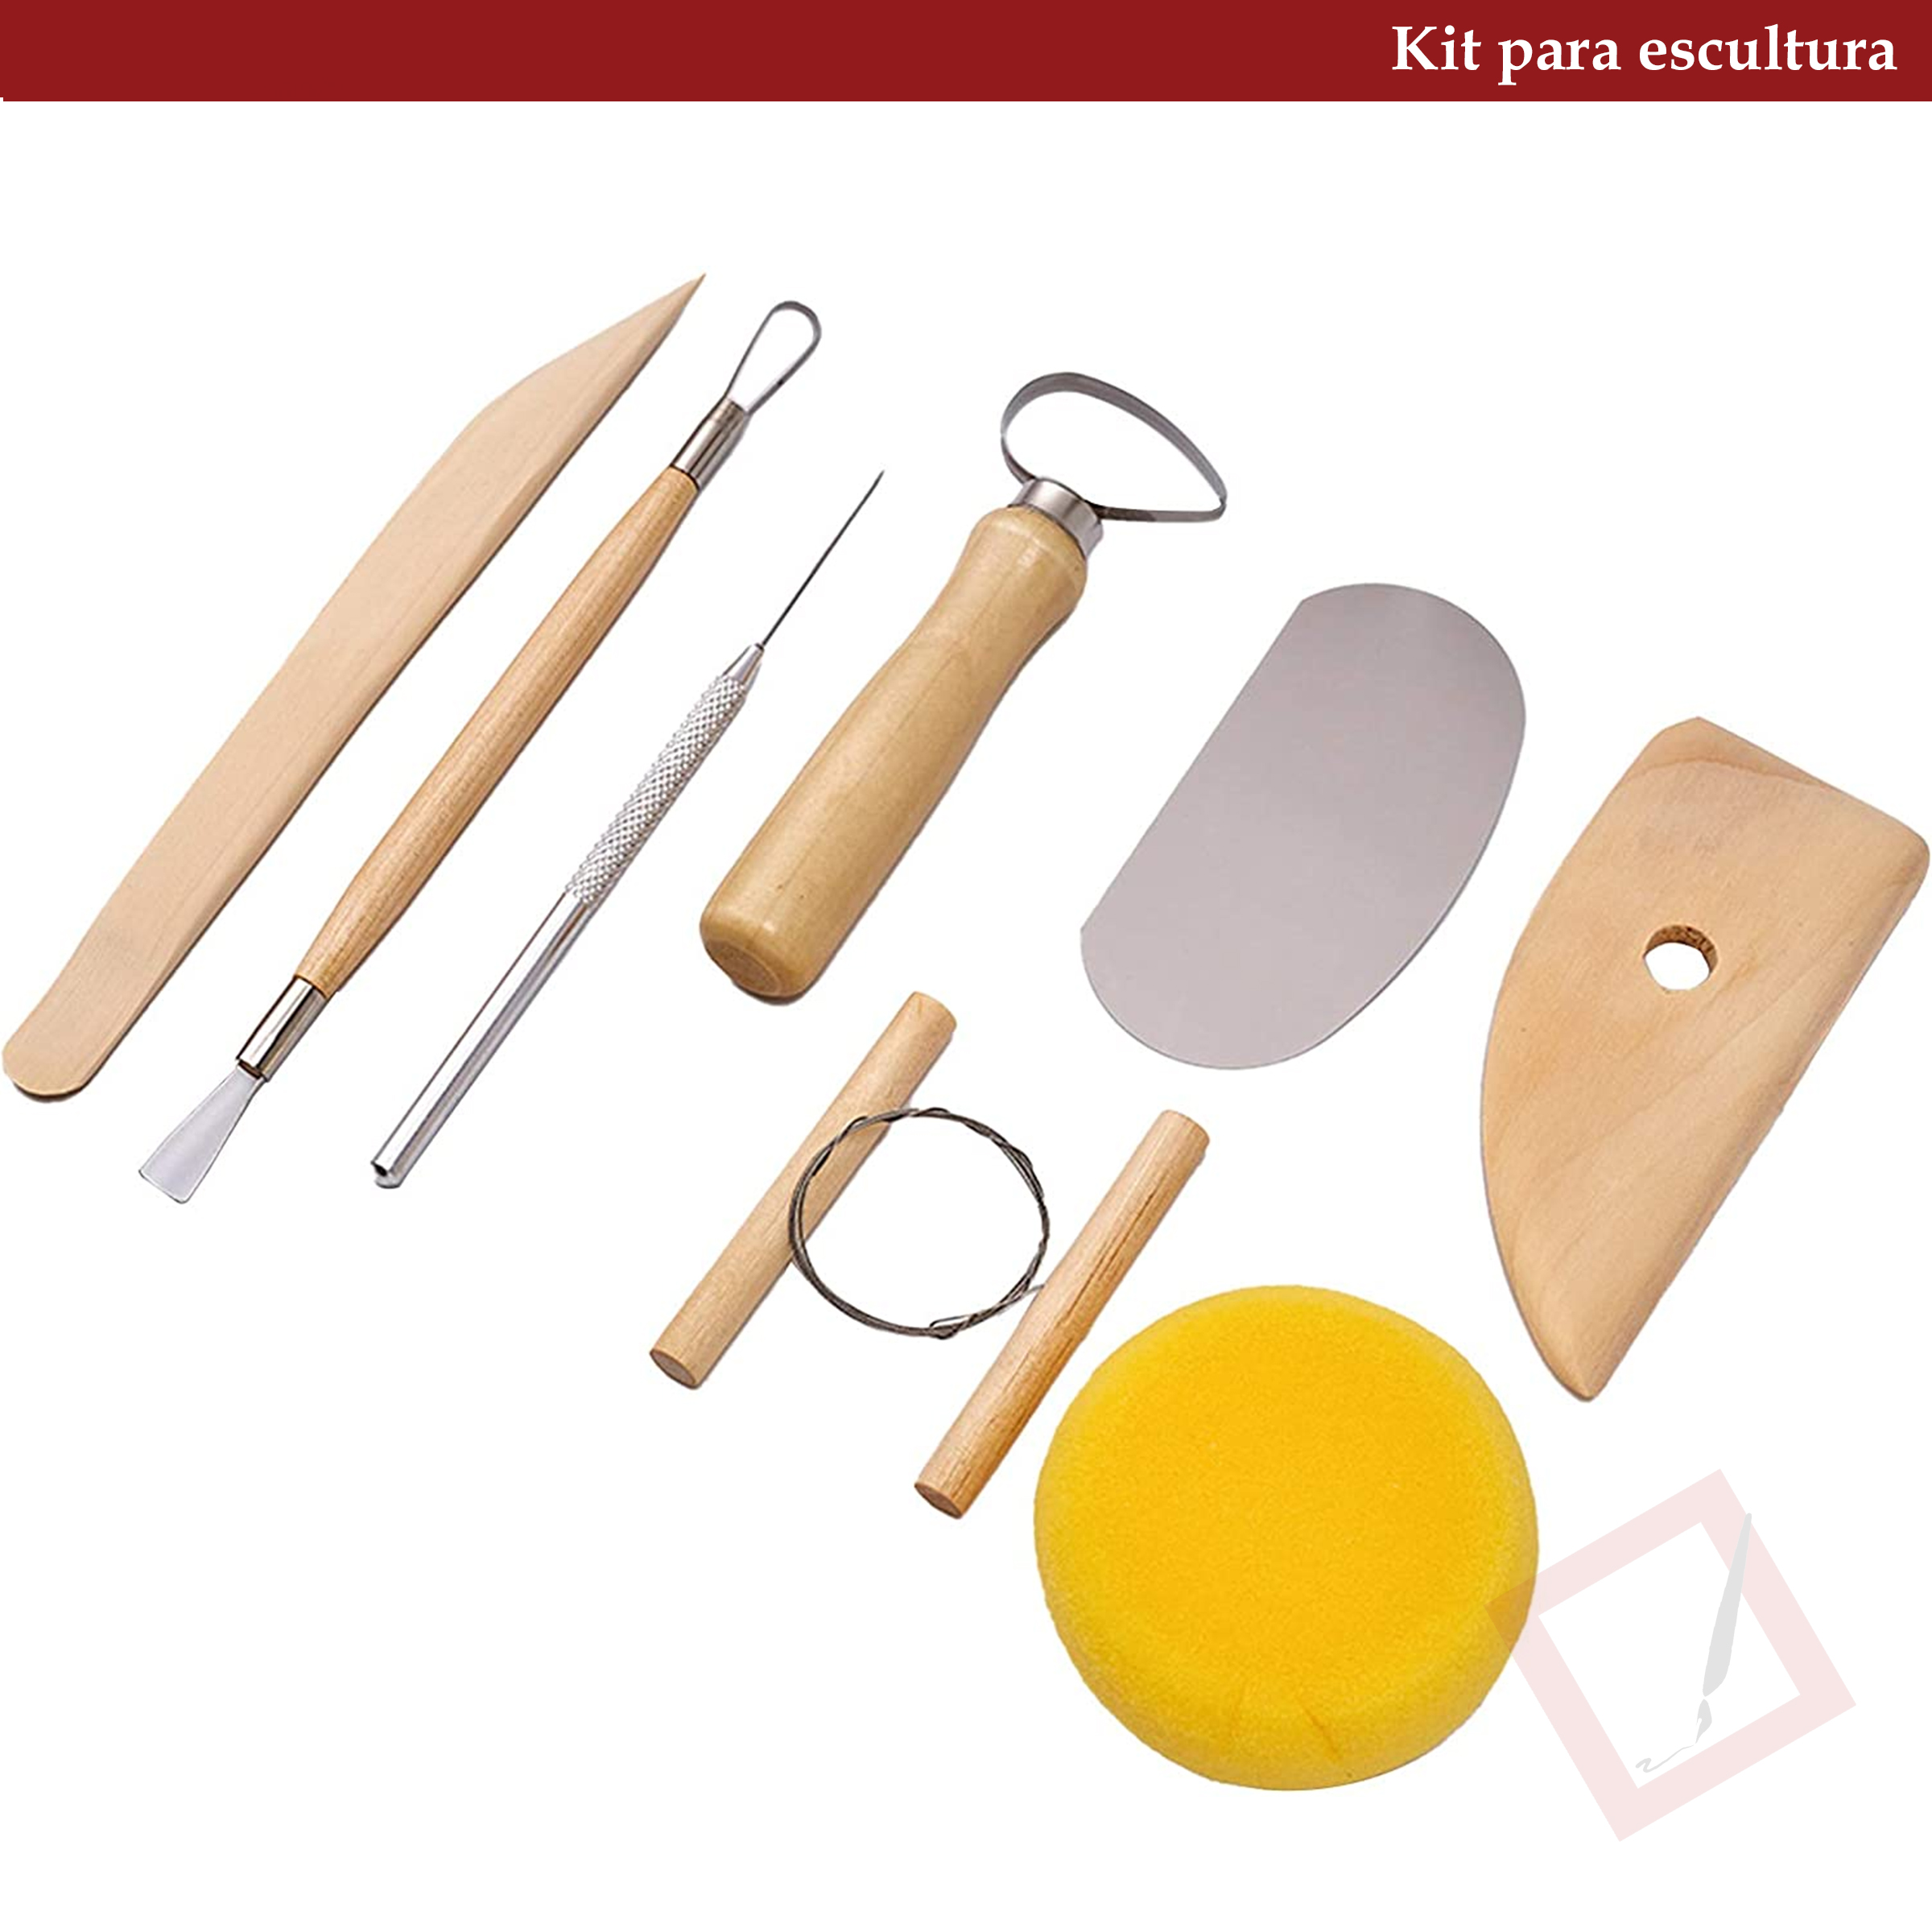 13 piezas de herramientas de arcilla de cerámica, kit de herramientas de  escultura de arcilla de cer Meterk Herramienta de arcilla